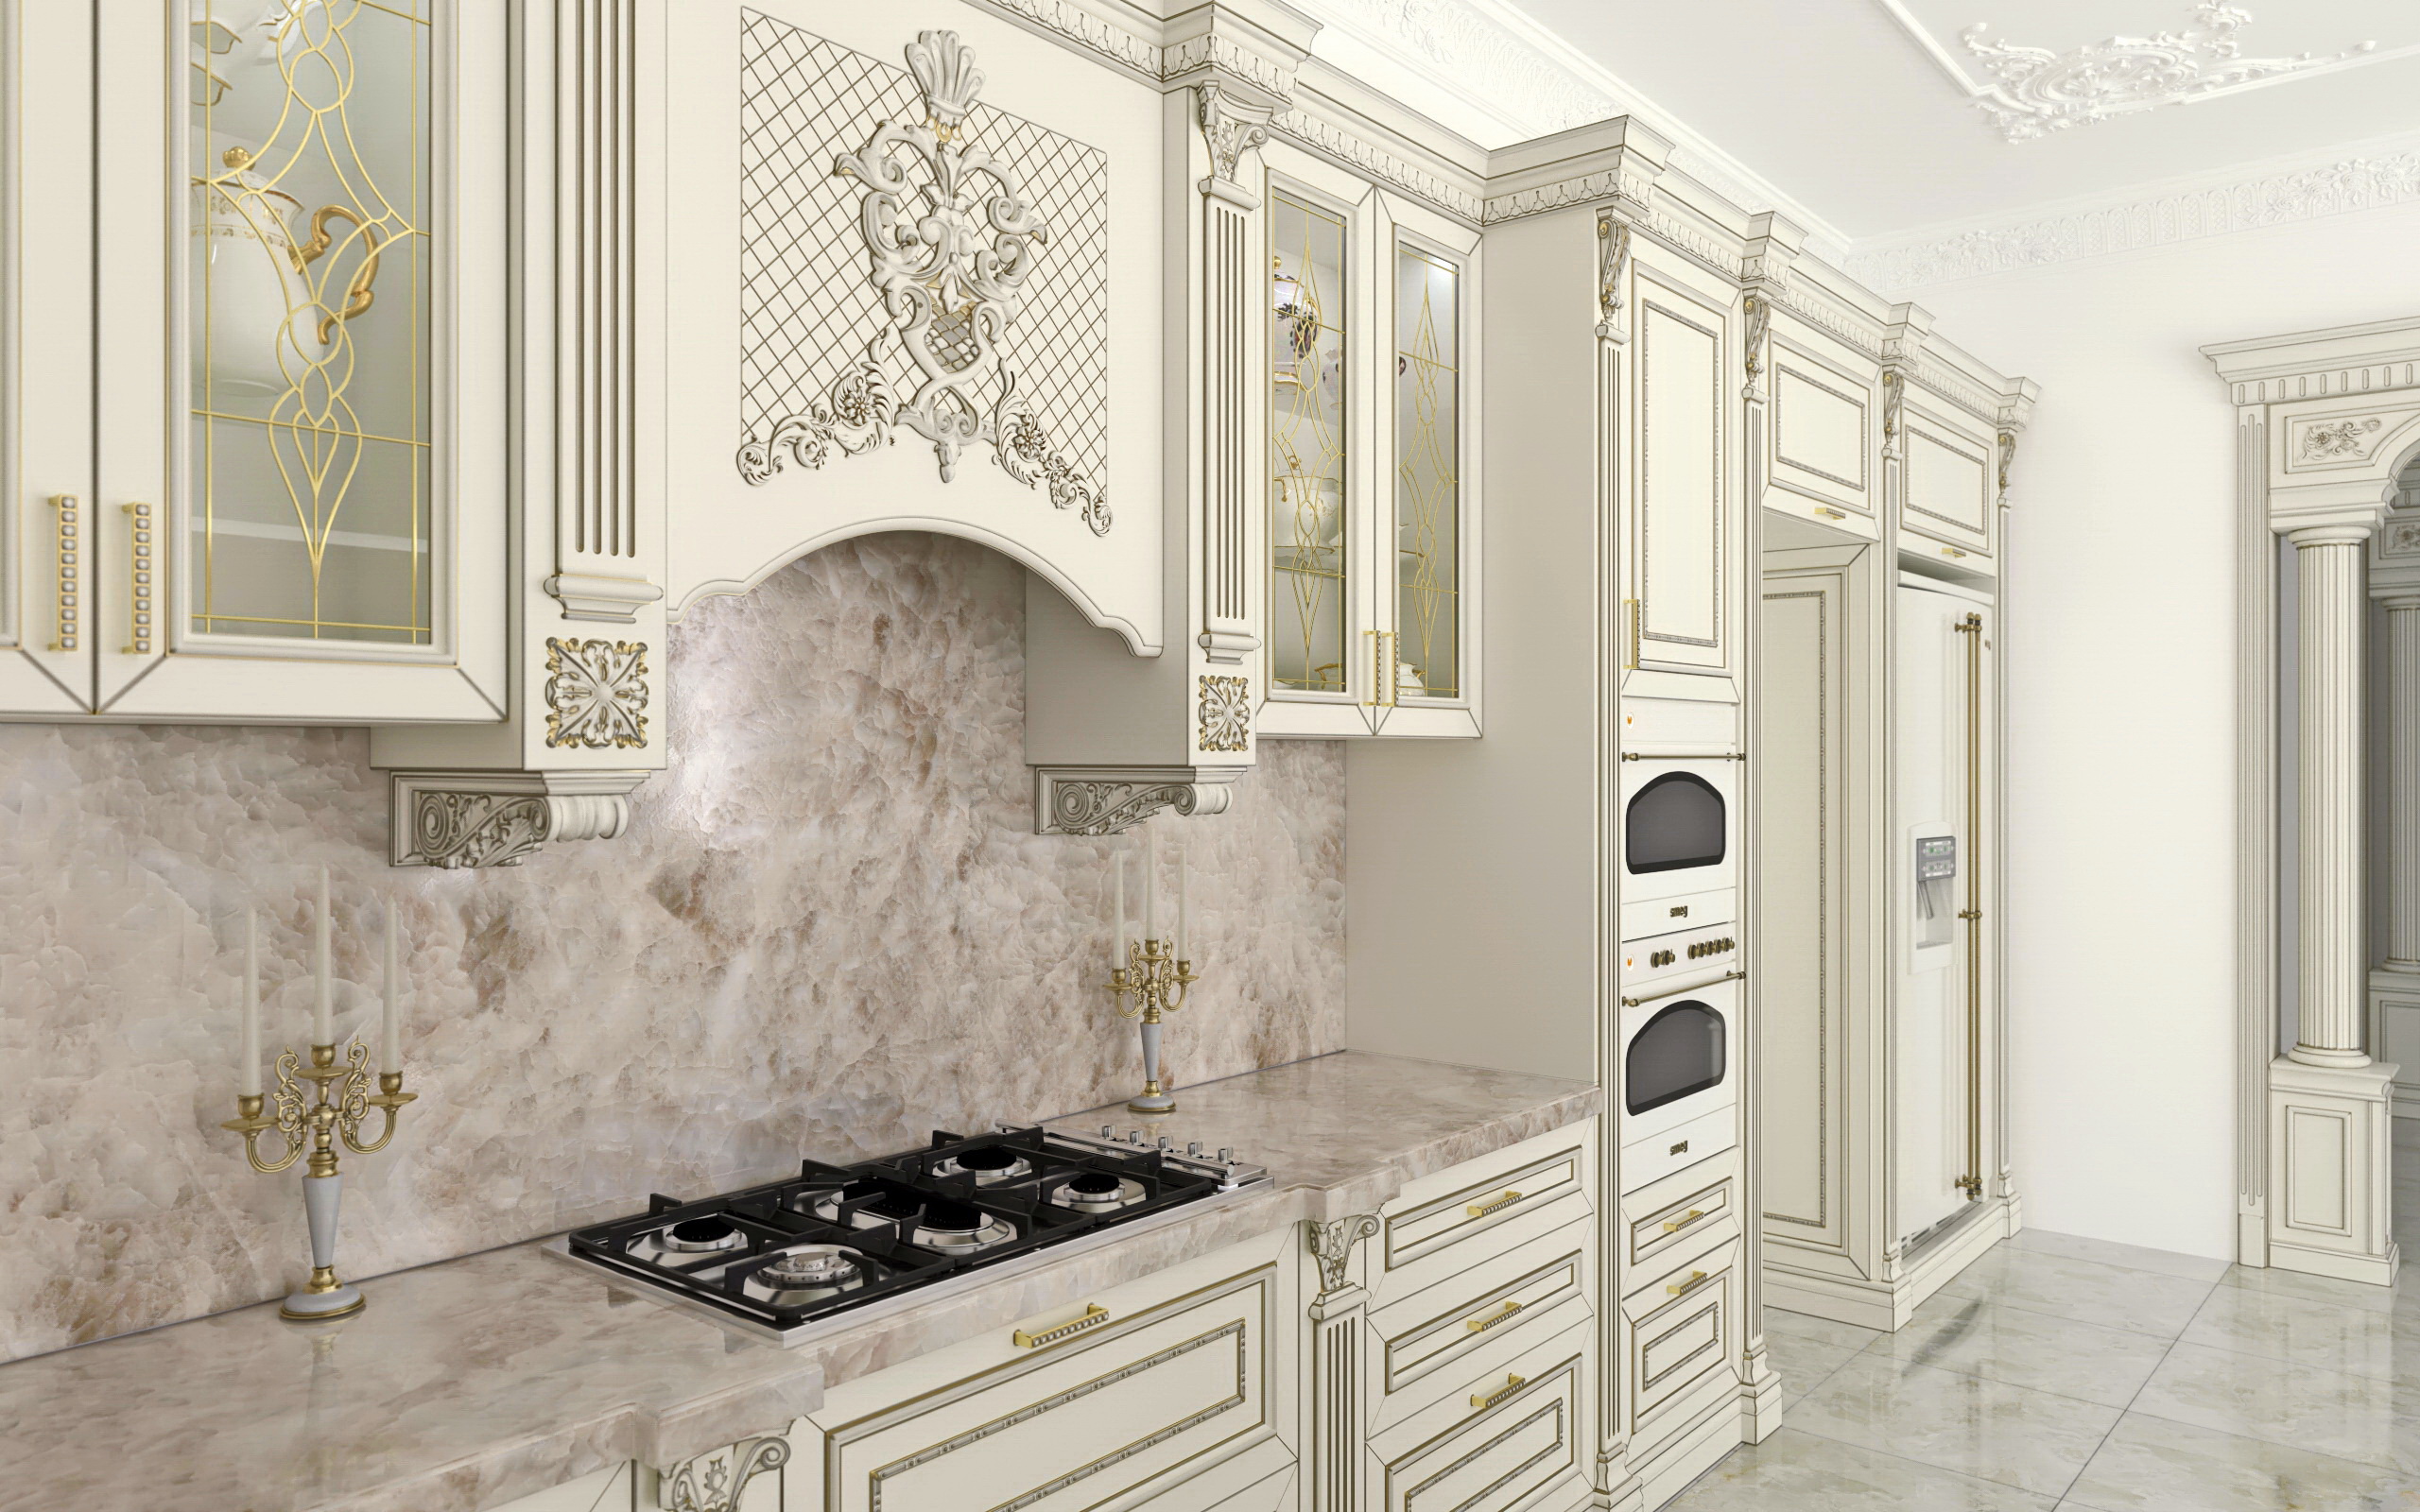 Cucina-bella casa in SolidWorks vray 3.0 immagine